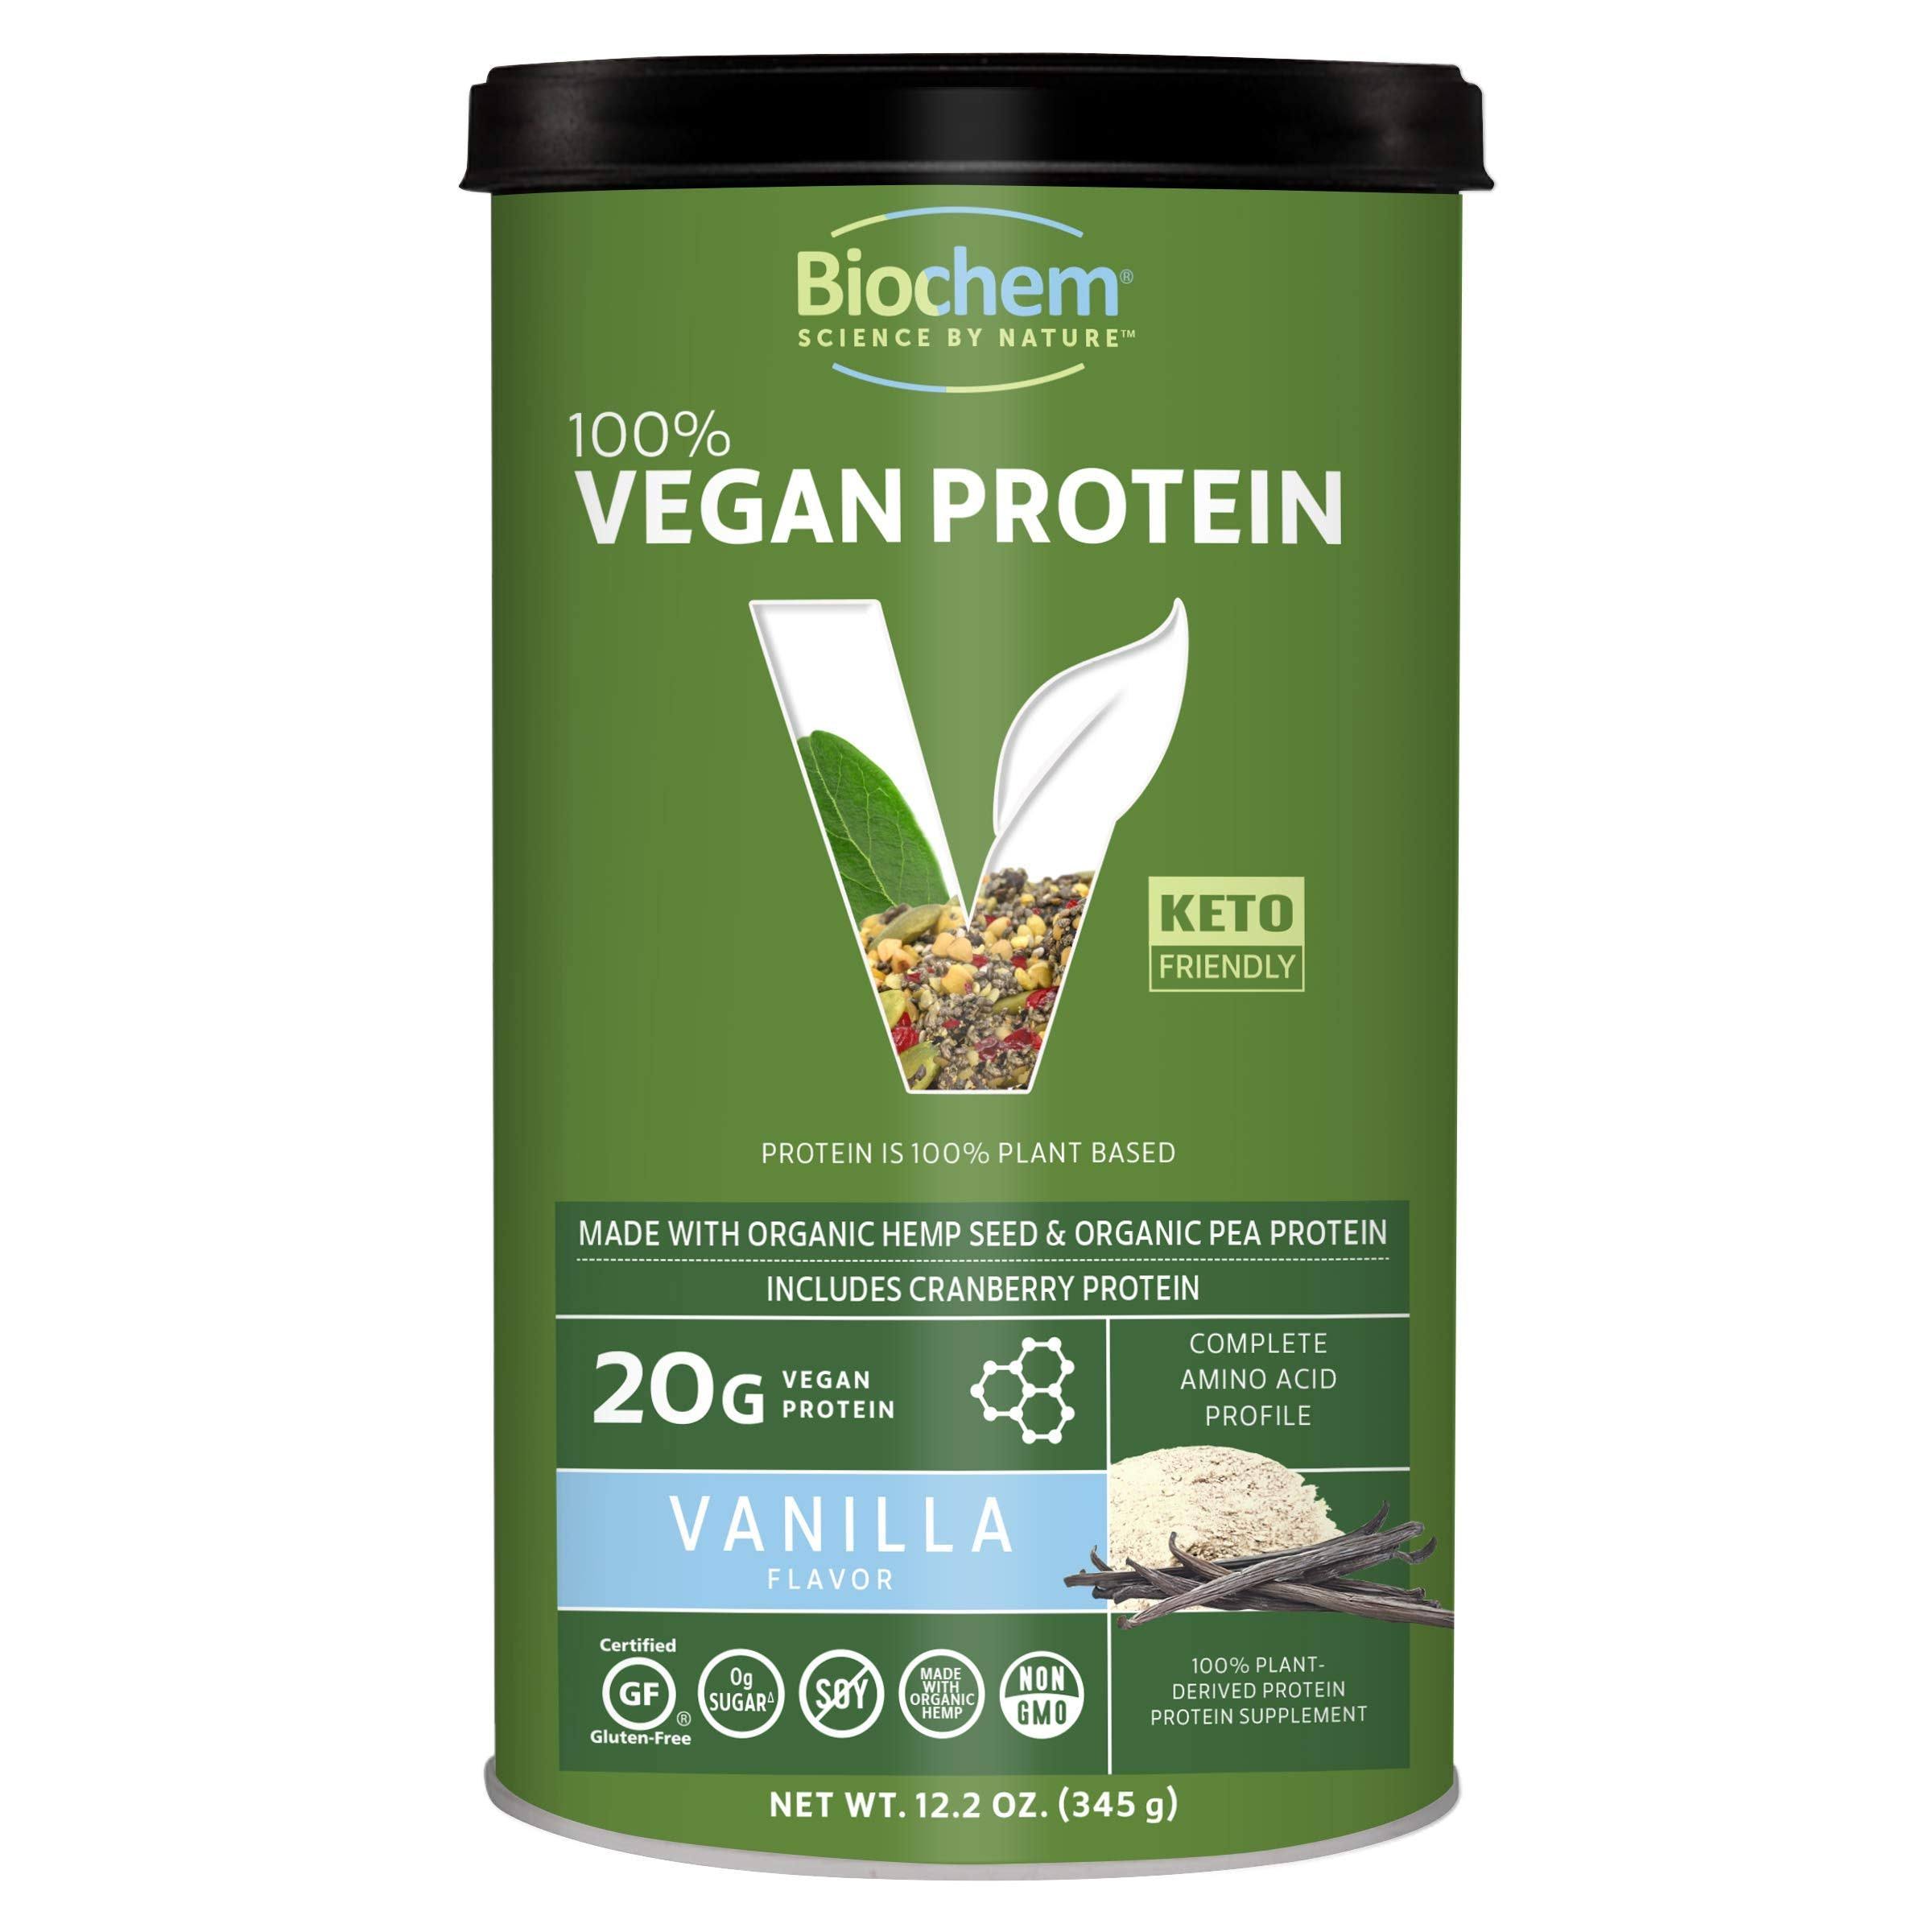 Biochem Vegan Protein Powder - Vanilla, 11.4oz